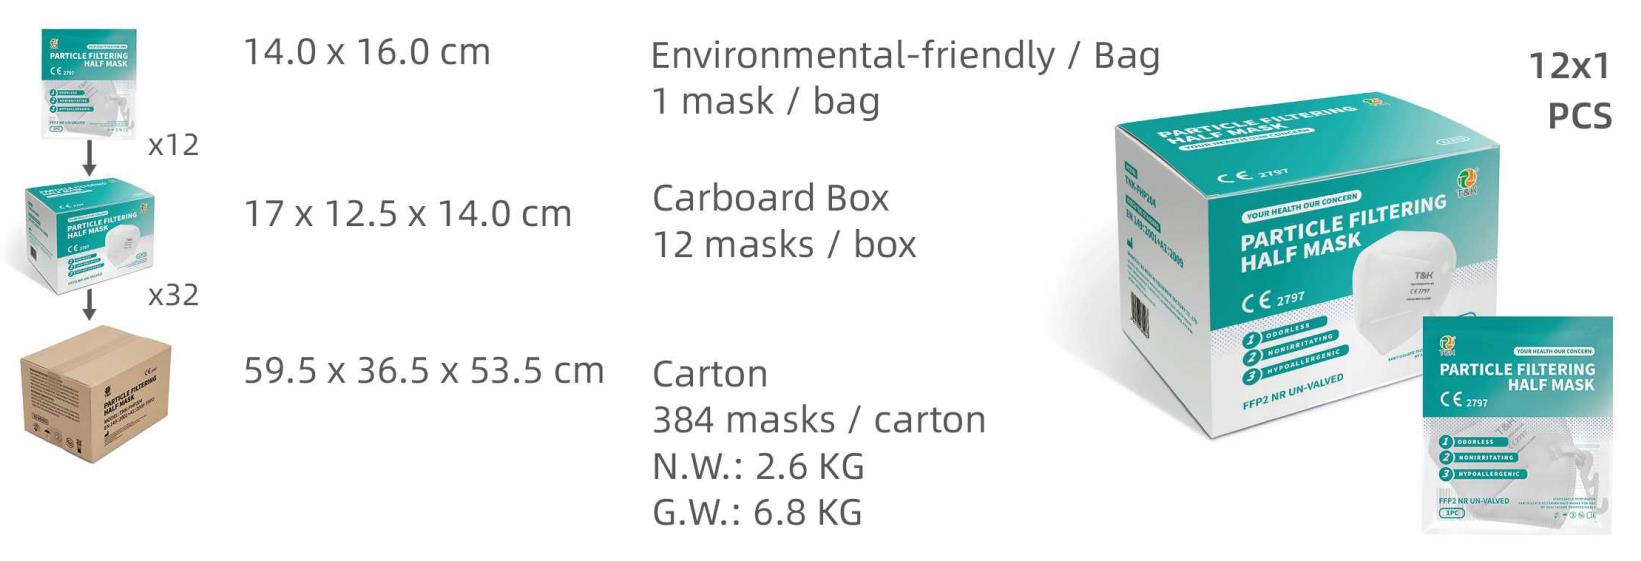 Μισή μάσκα φιλτραρίσματος σωματιδίων FFP2 (Πακέτο έγχρωμης εκτύπωσης)